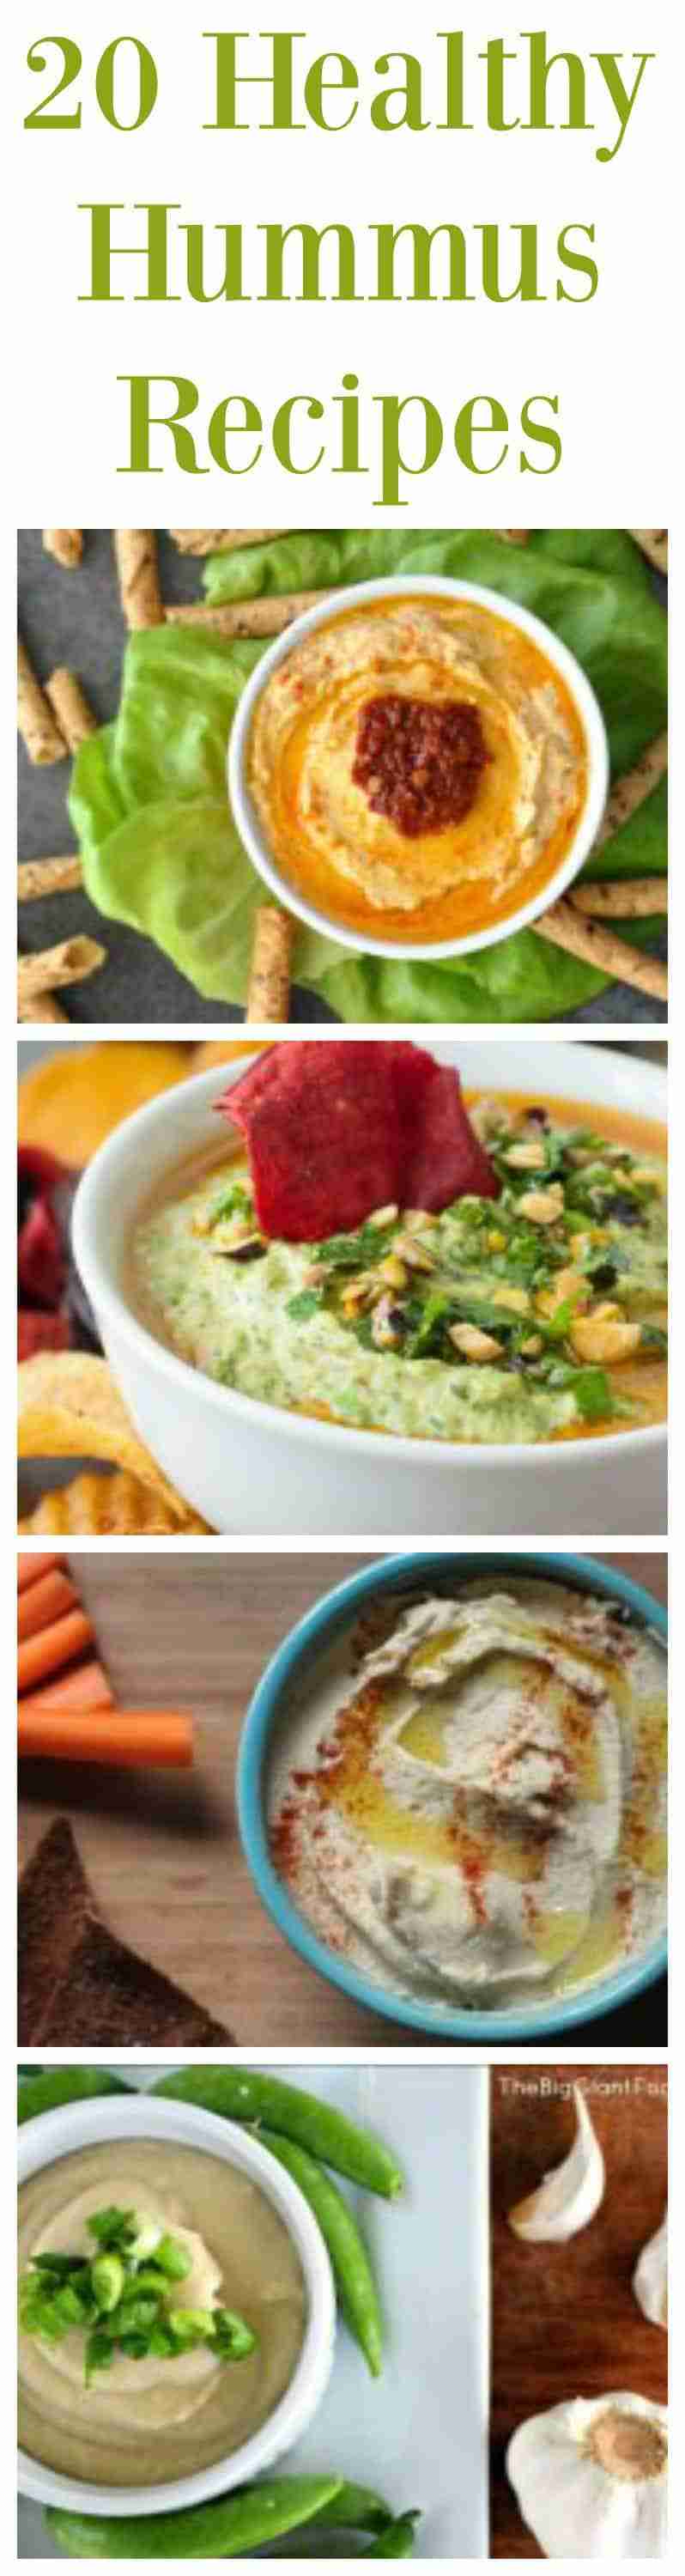 20 Healthy Hummus Recipes | Daily Dish Magazine